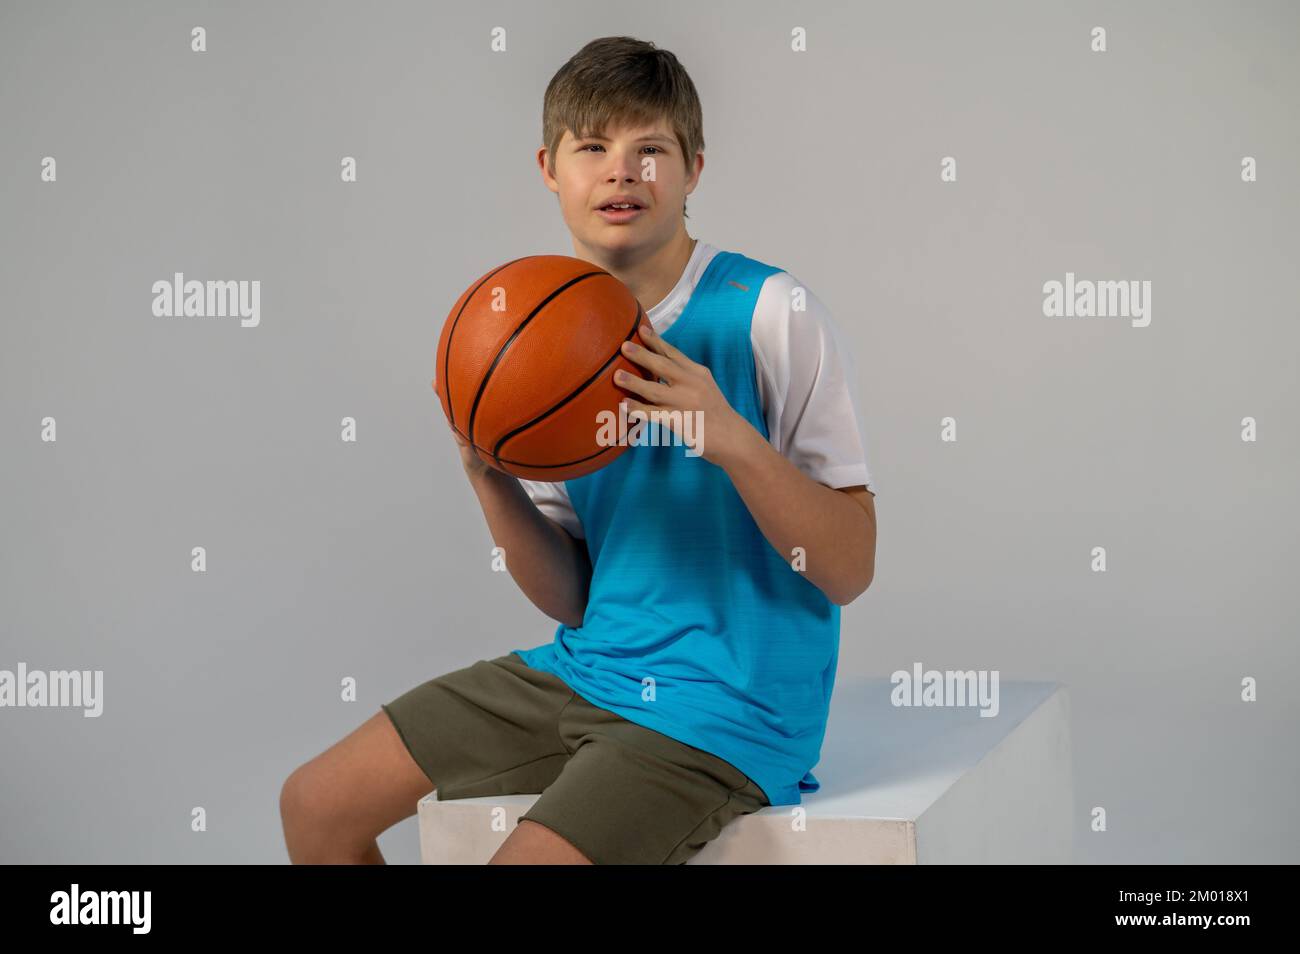 Baloncesto. Niño en pantalones cortos y camiseta azul sentado con